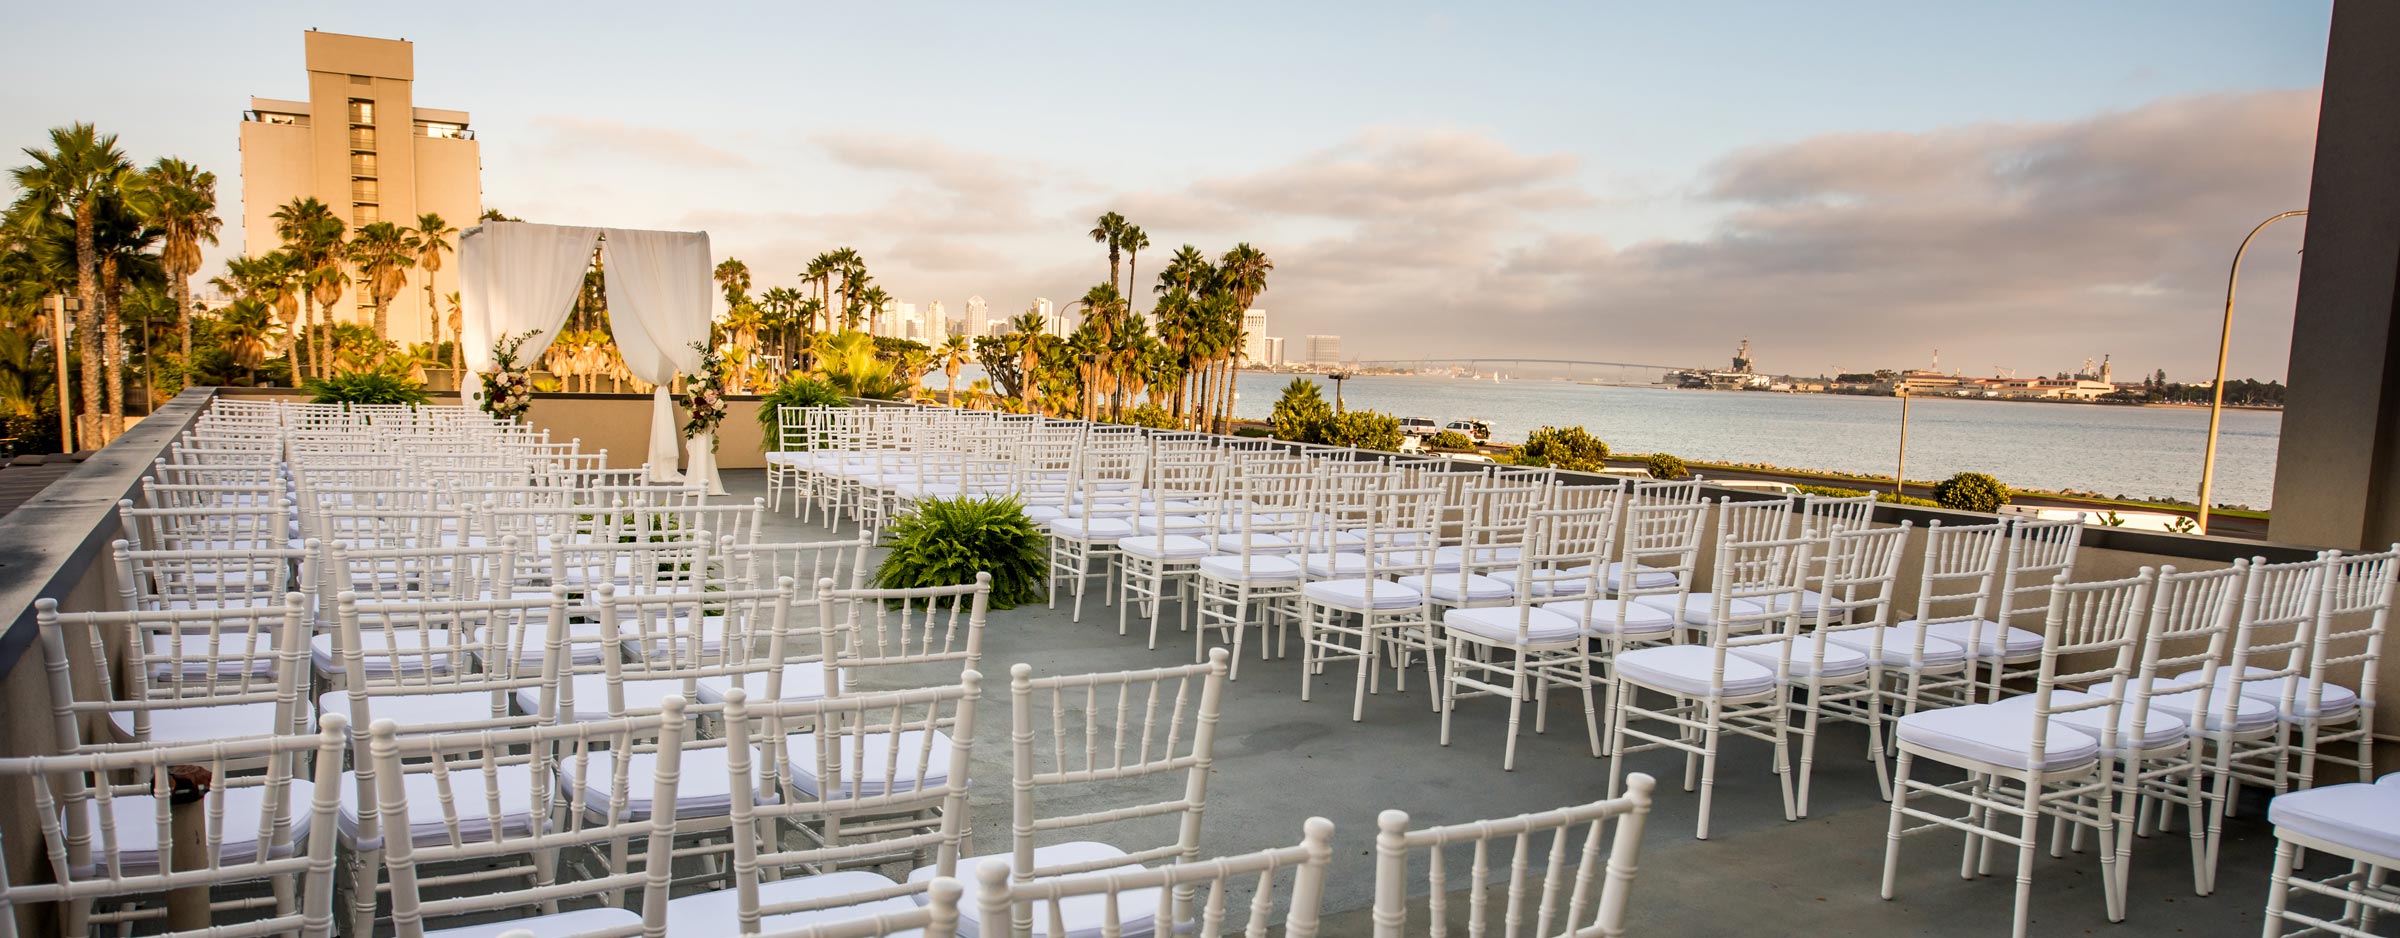 21+ Outdoor Wedding Venues In San Diego